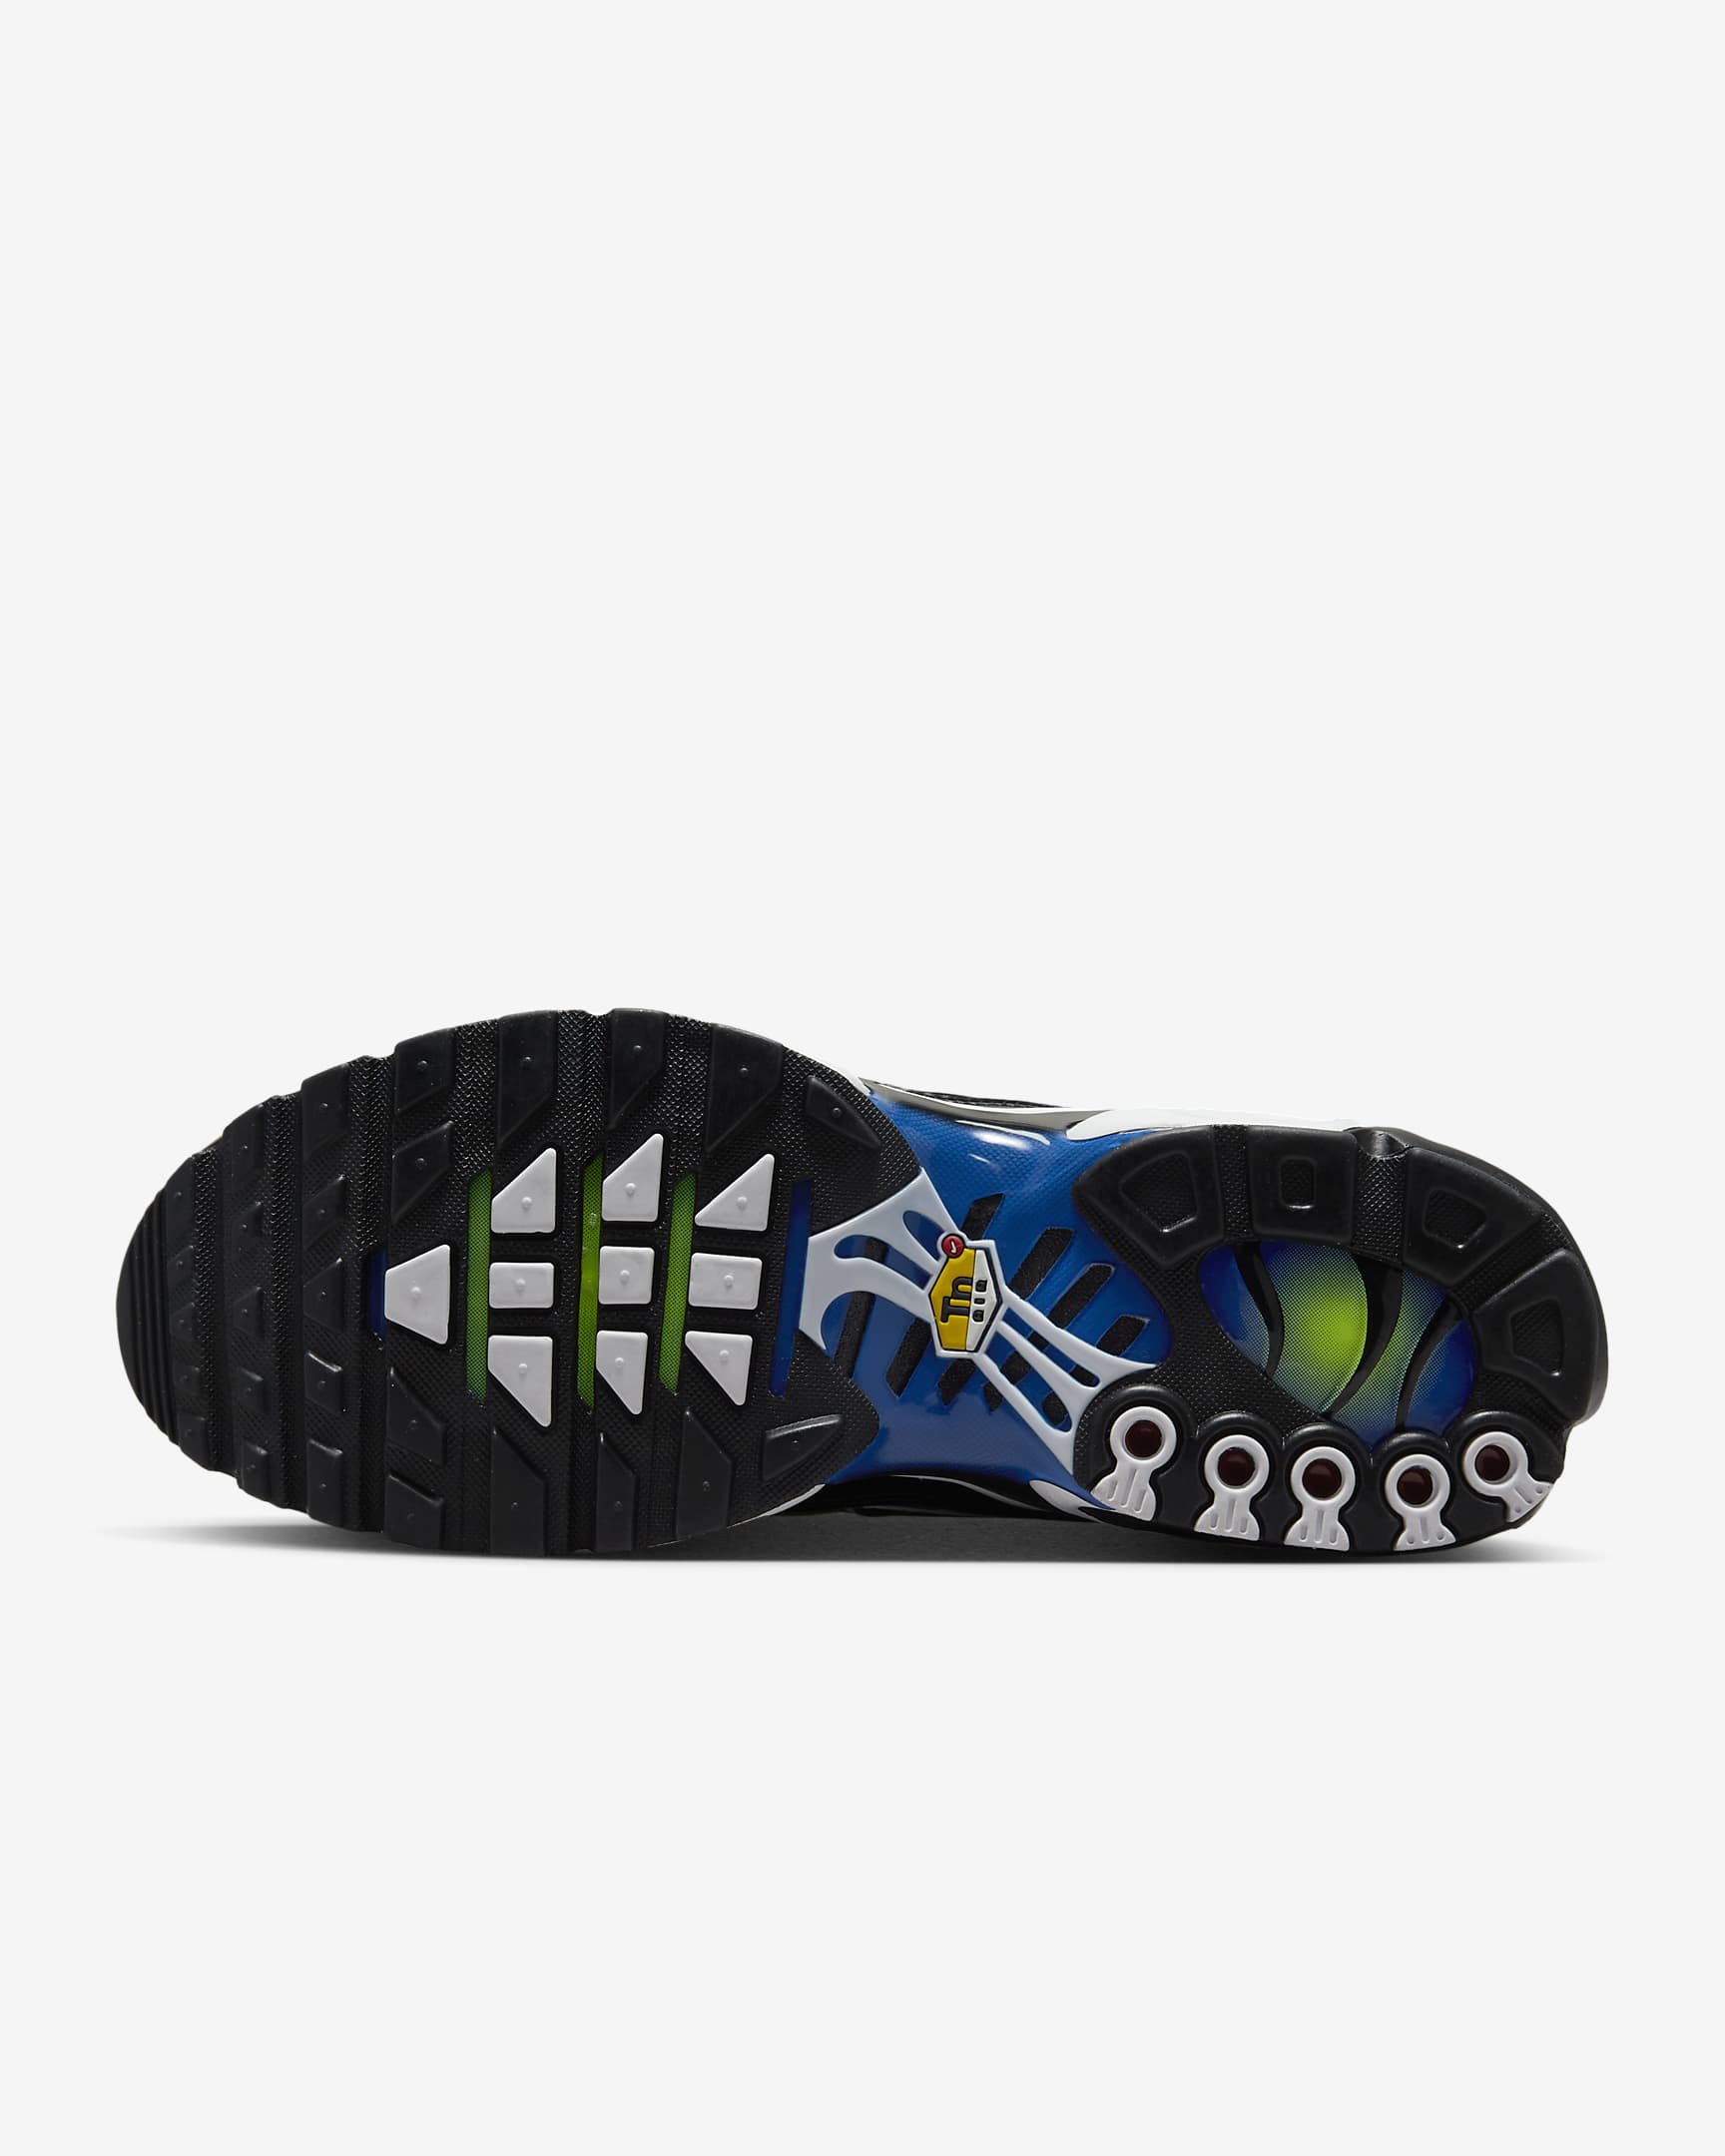 Sapatilhas Nike Air Max Plus para homem - Preto/Azul Racer/Volt/Preto